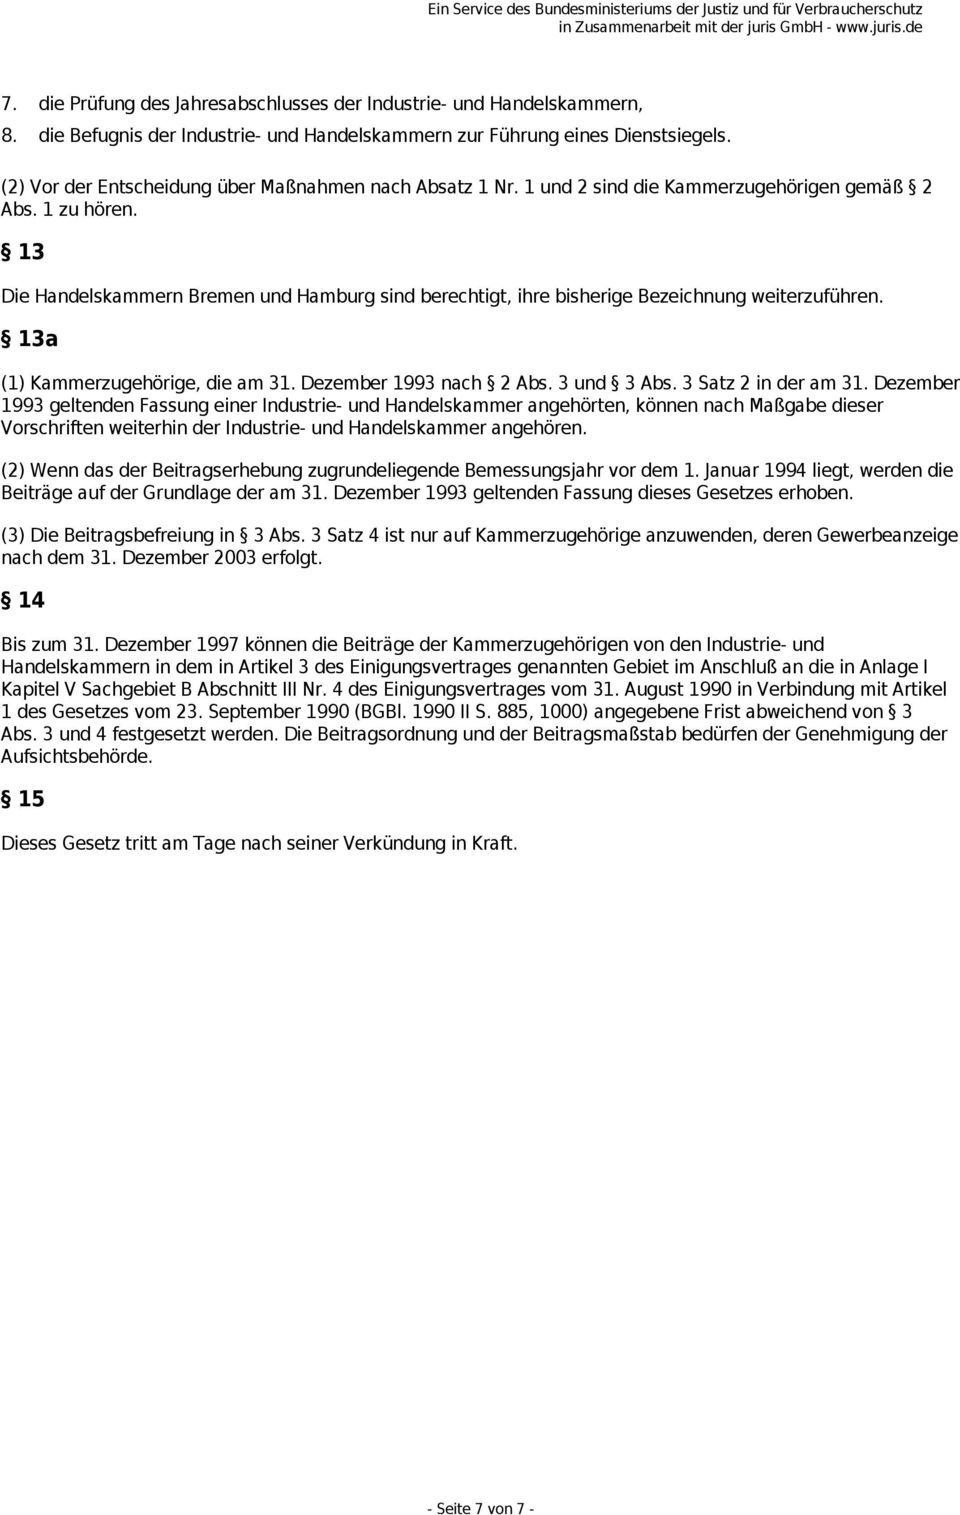 13 Die Handelskammern Bremen und Hamburg sind berechtigt, ihre bisherige Bezeichnung weiterzuführen. 13a (1) Kammerzugehörige, die am 31. Dezember 1993 nach 2 Abs. 3 und 3 Abs. 3 Satz 2 in der am 31.